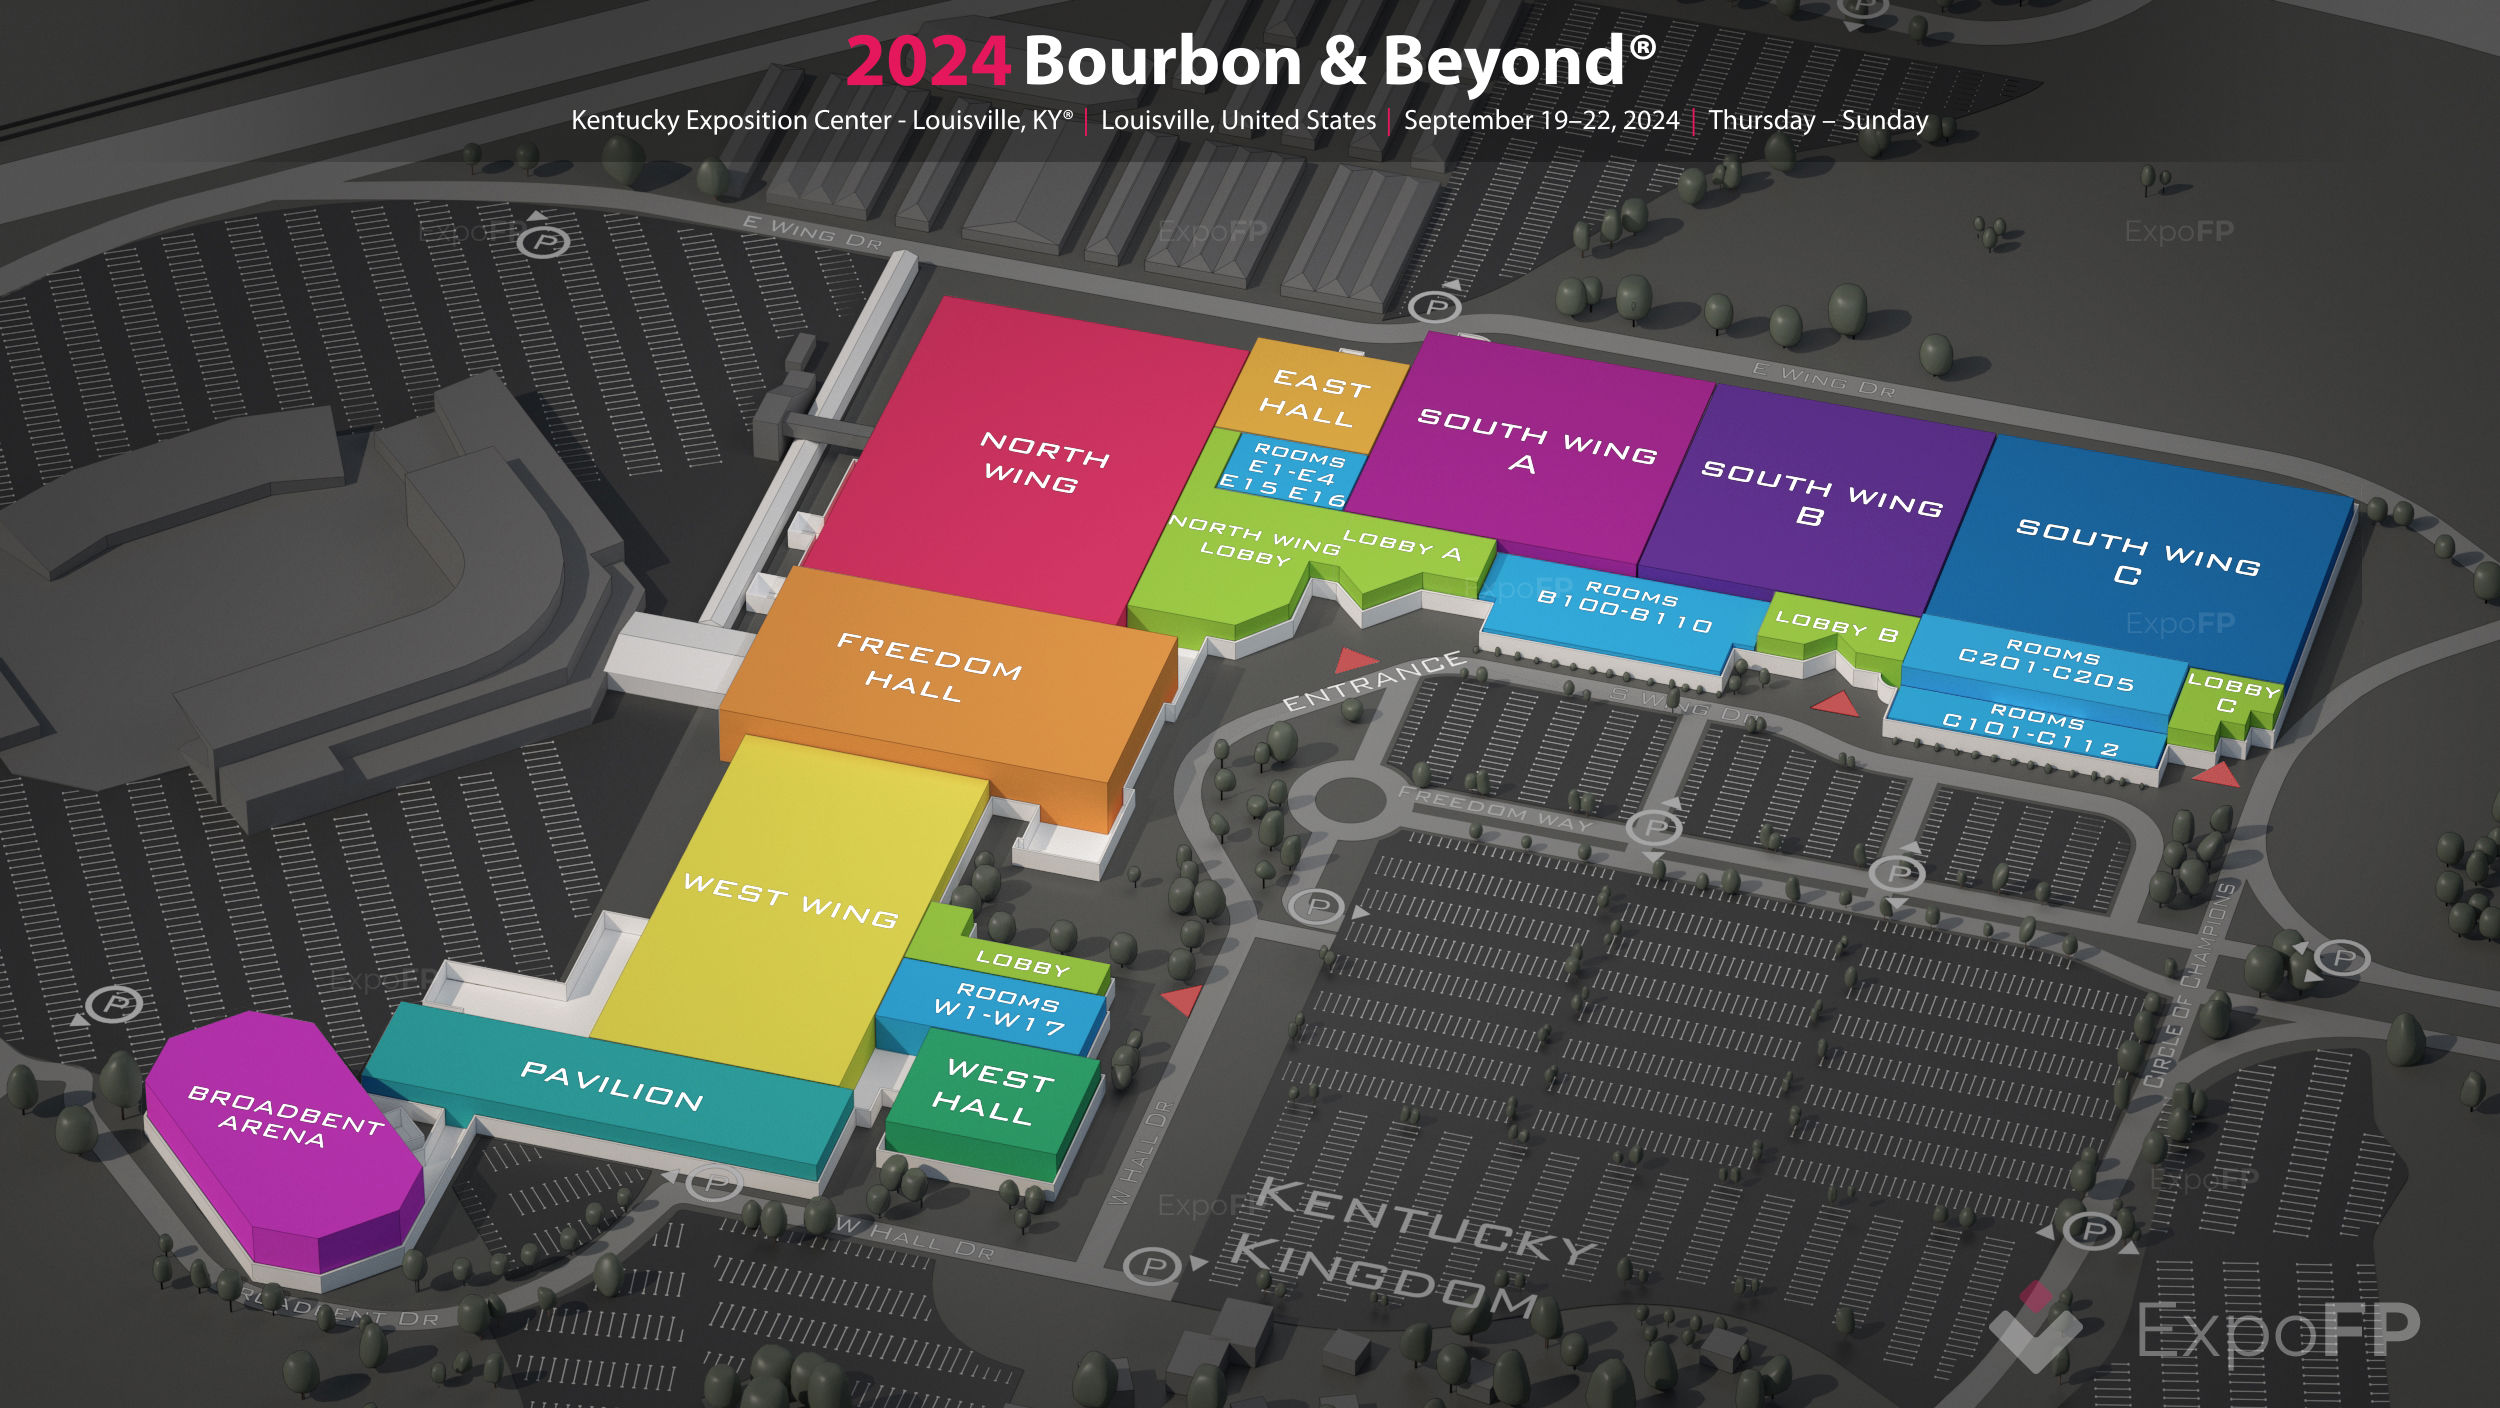 Bourbon & Beyond 2024 in Kentucky Exposition Center Louisville, KY